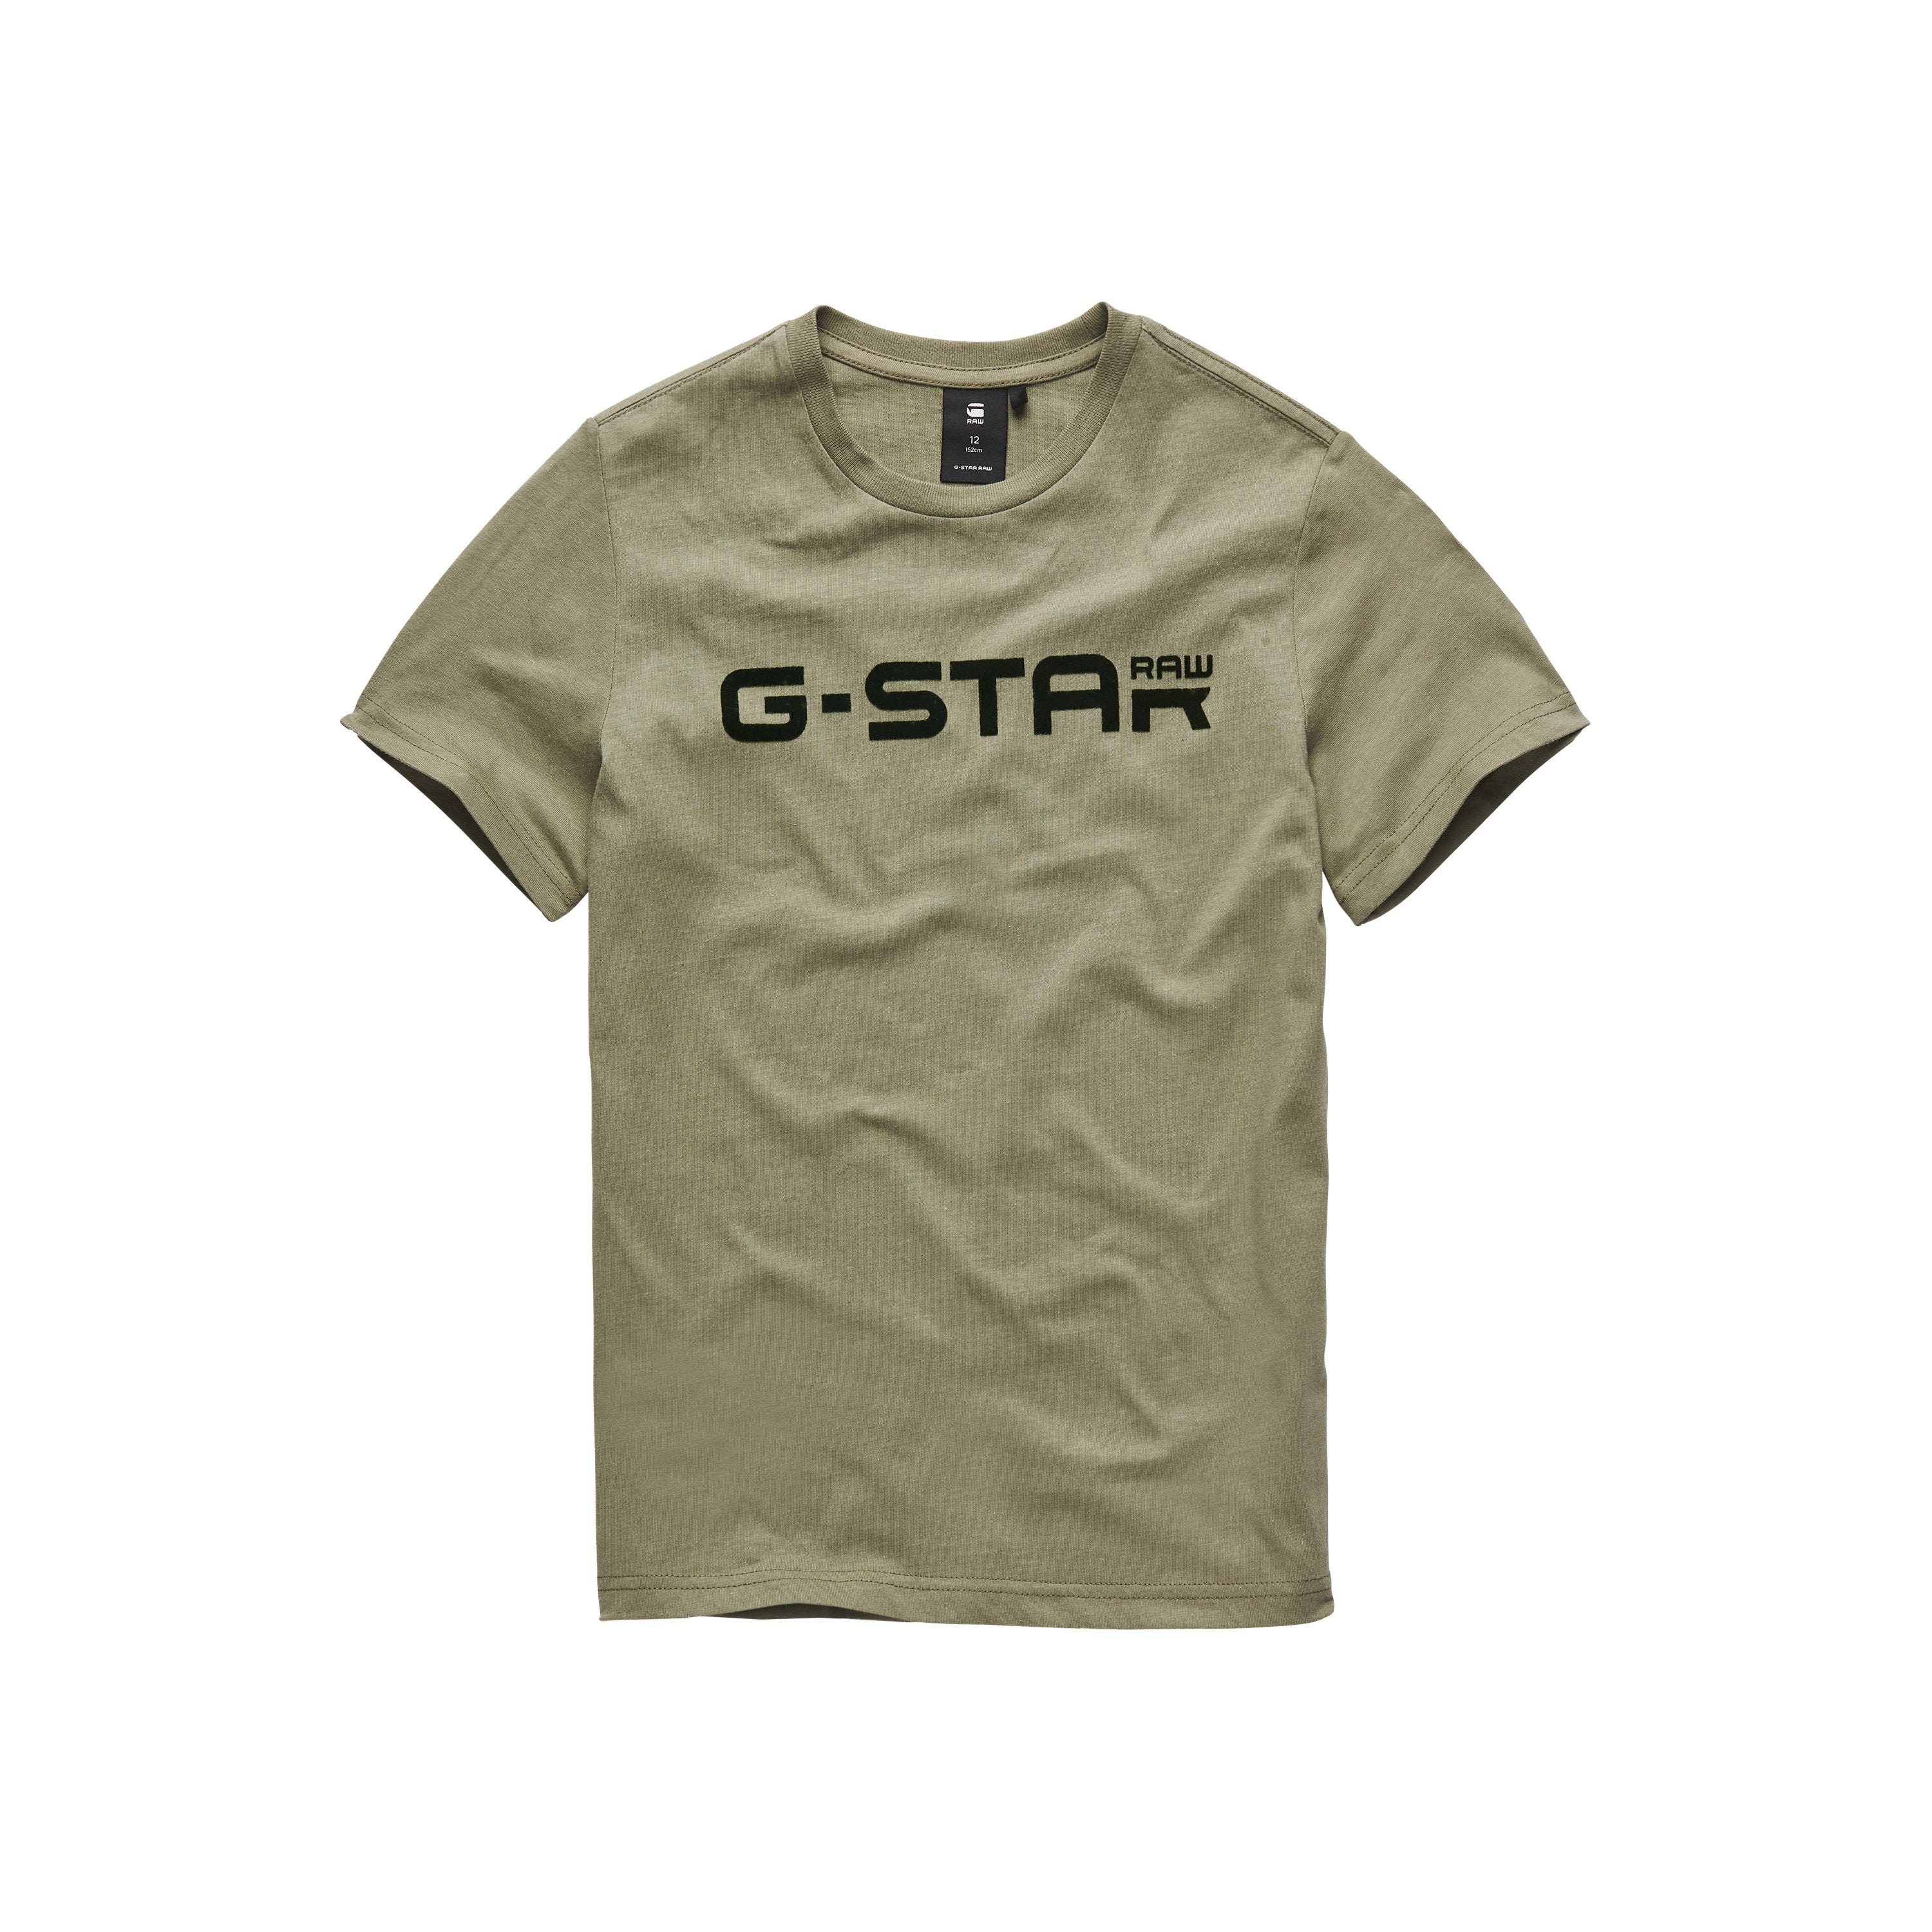 Jongens Tee Shirt van G-Star Raw in de kleur Bog Green in maat 128.